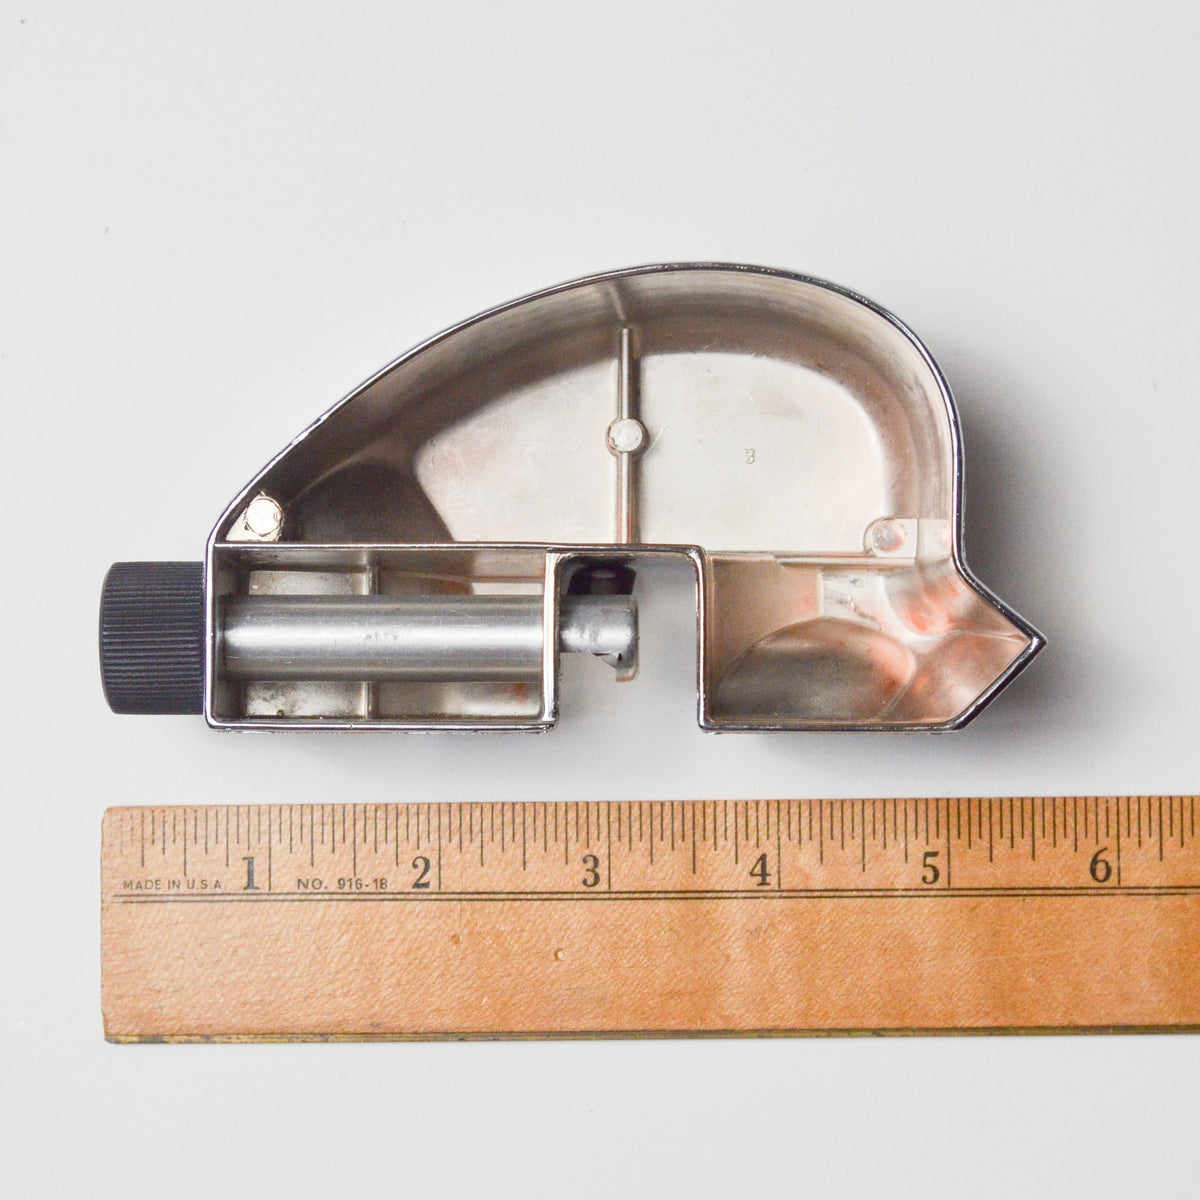 Dexter Mat Cutter Tool – Make & Mend